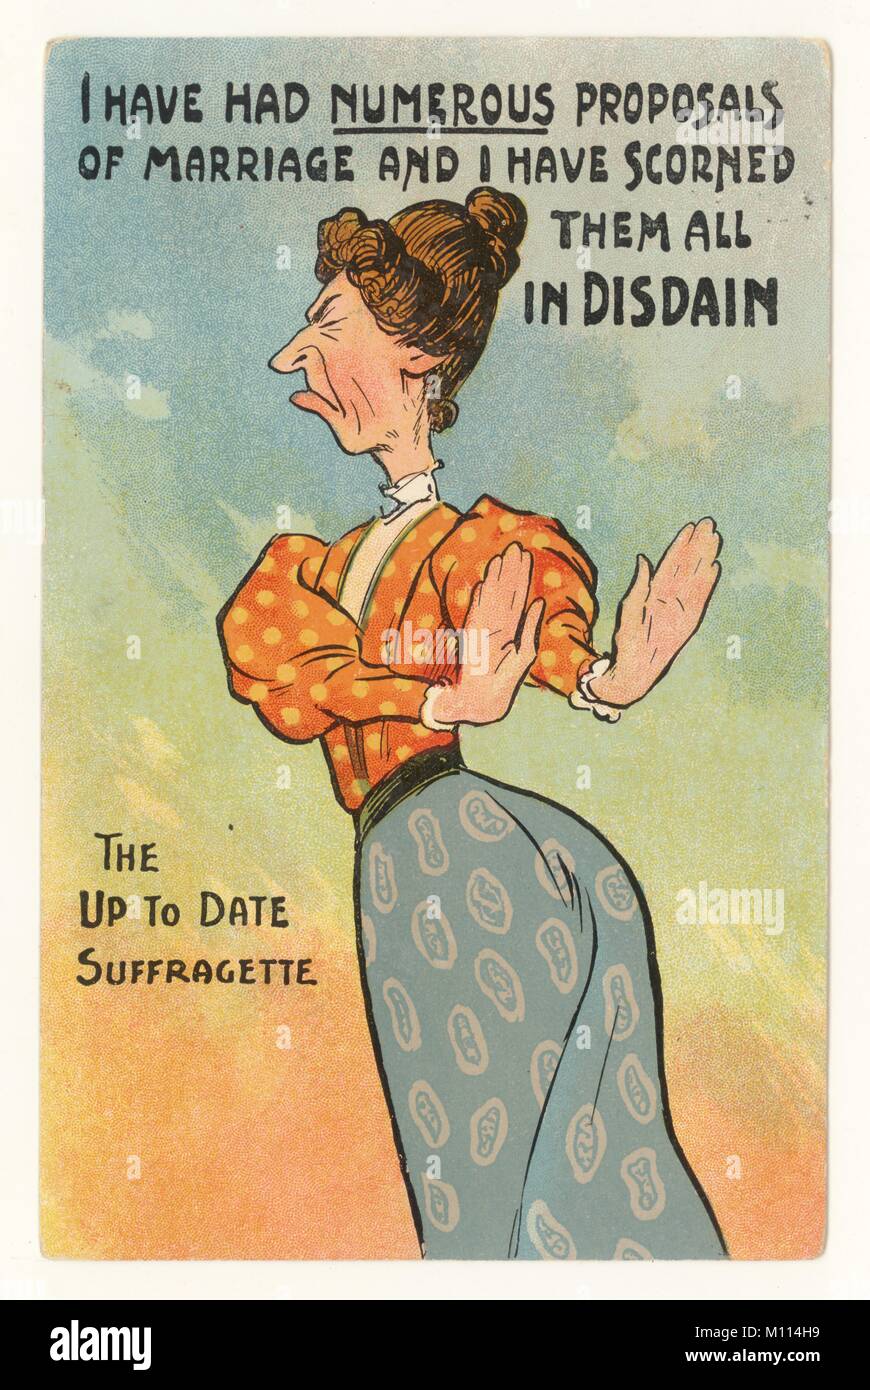 Anti-suffragette frauenfeindliche comic Postkarte von unatttractive Old Maid liest "Die aktuell Suffragette' und 'Ich habe zahlreiche Vorschläge der Ehe, und ich habe sie alle in Verachtung" verachtet, Postmarked 1911, Großbritannien Stockfoto